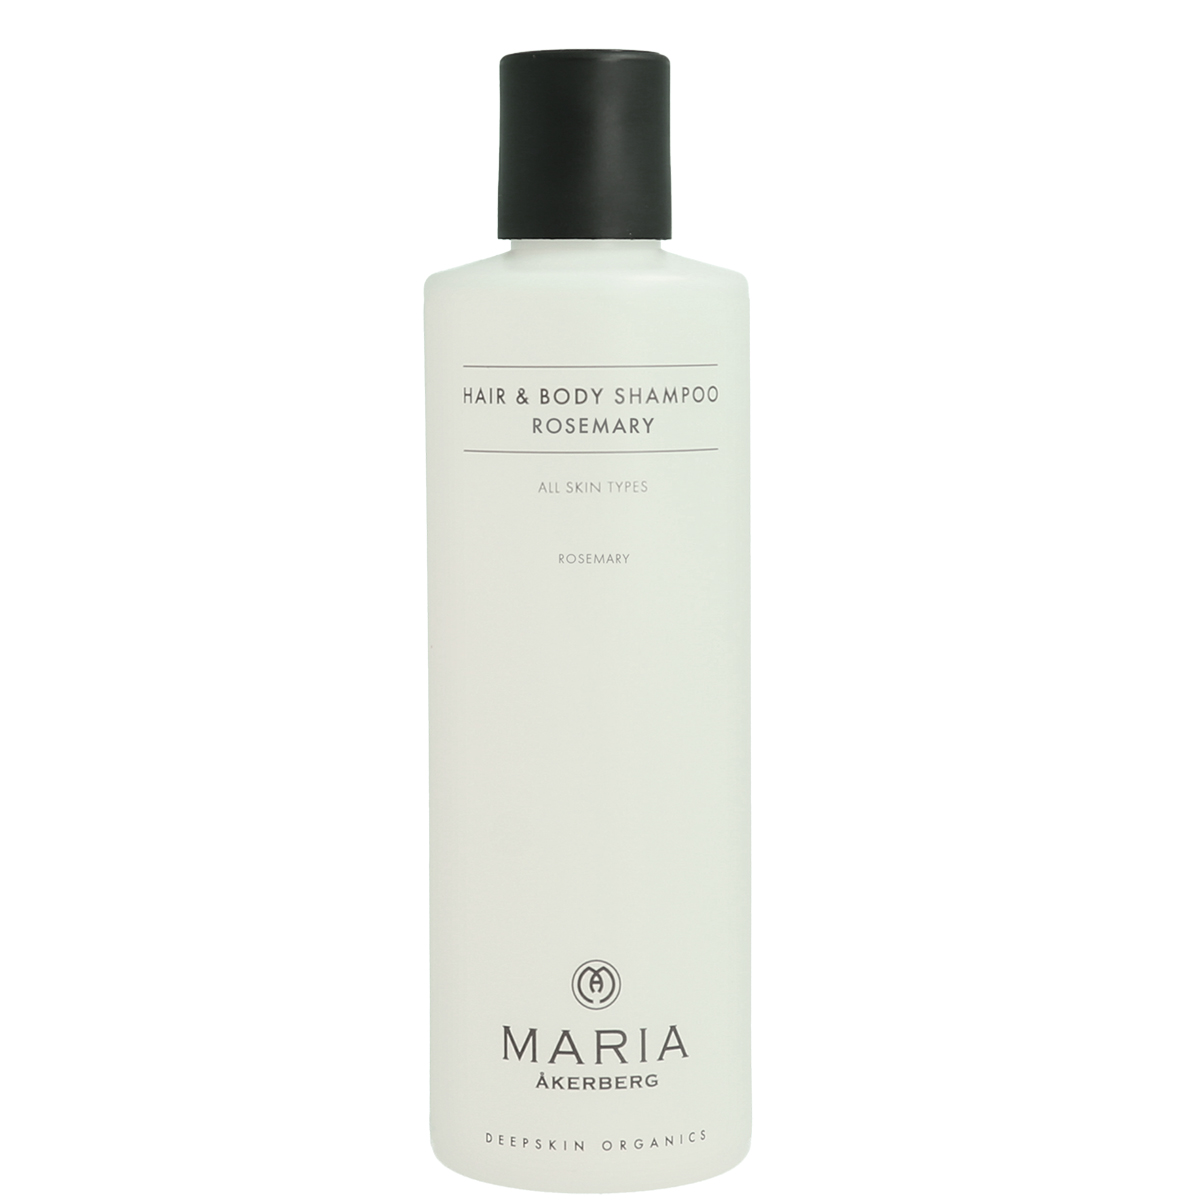 Maria Åkerberg Hair & Body Shampoo Rosemary 250 ml